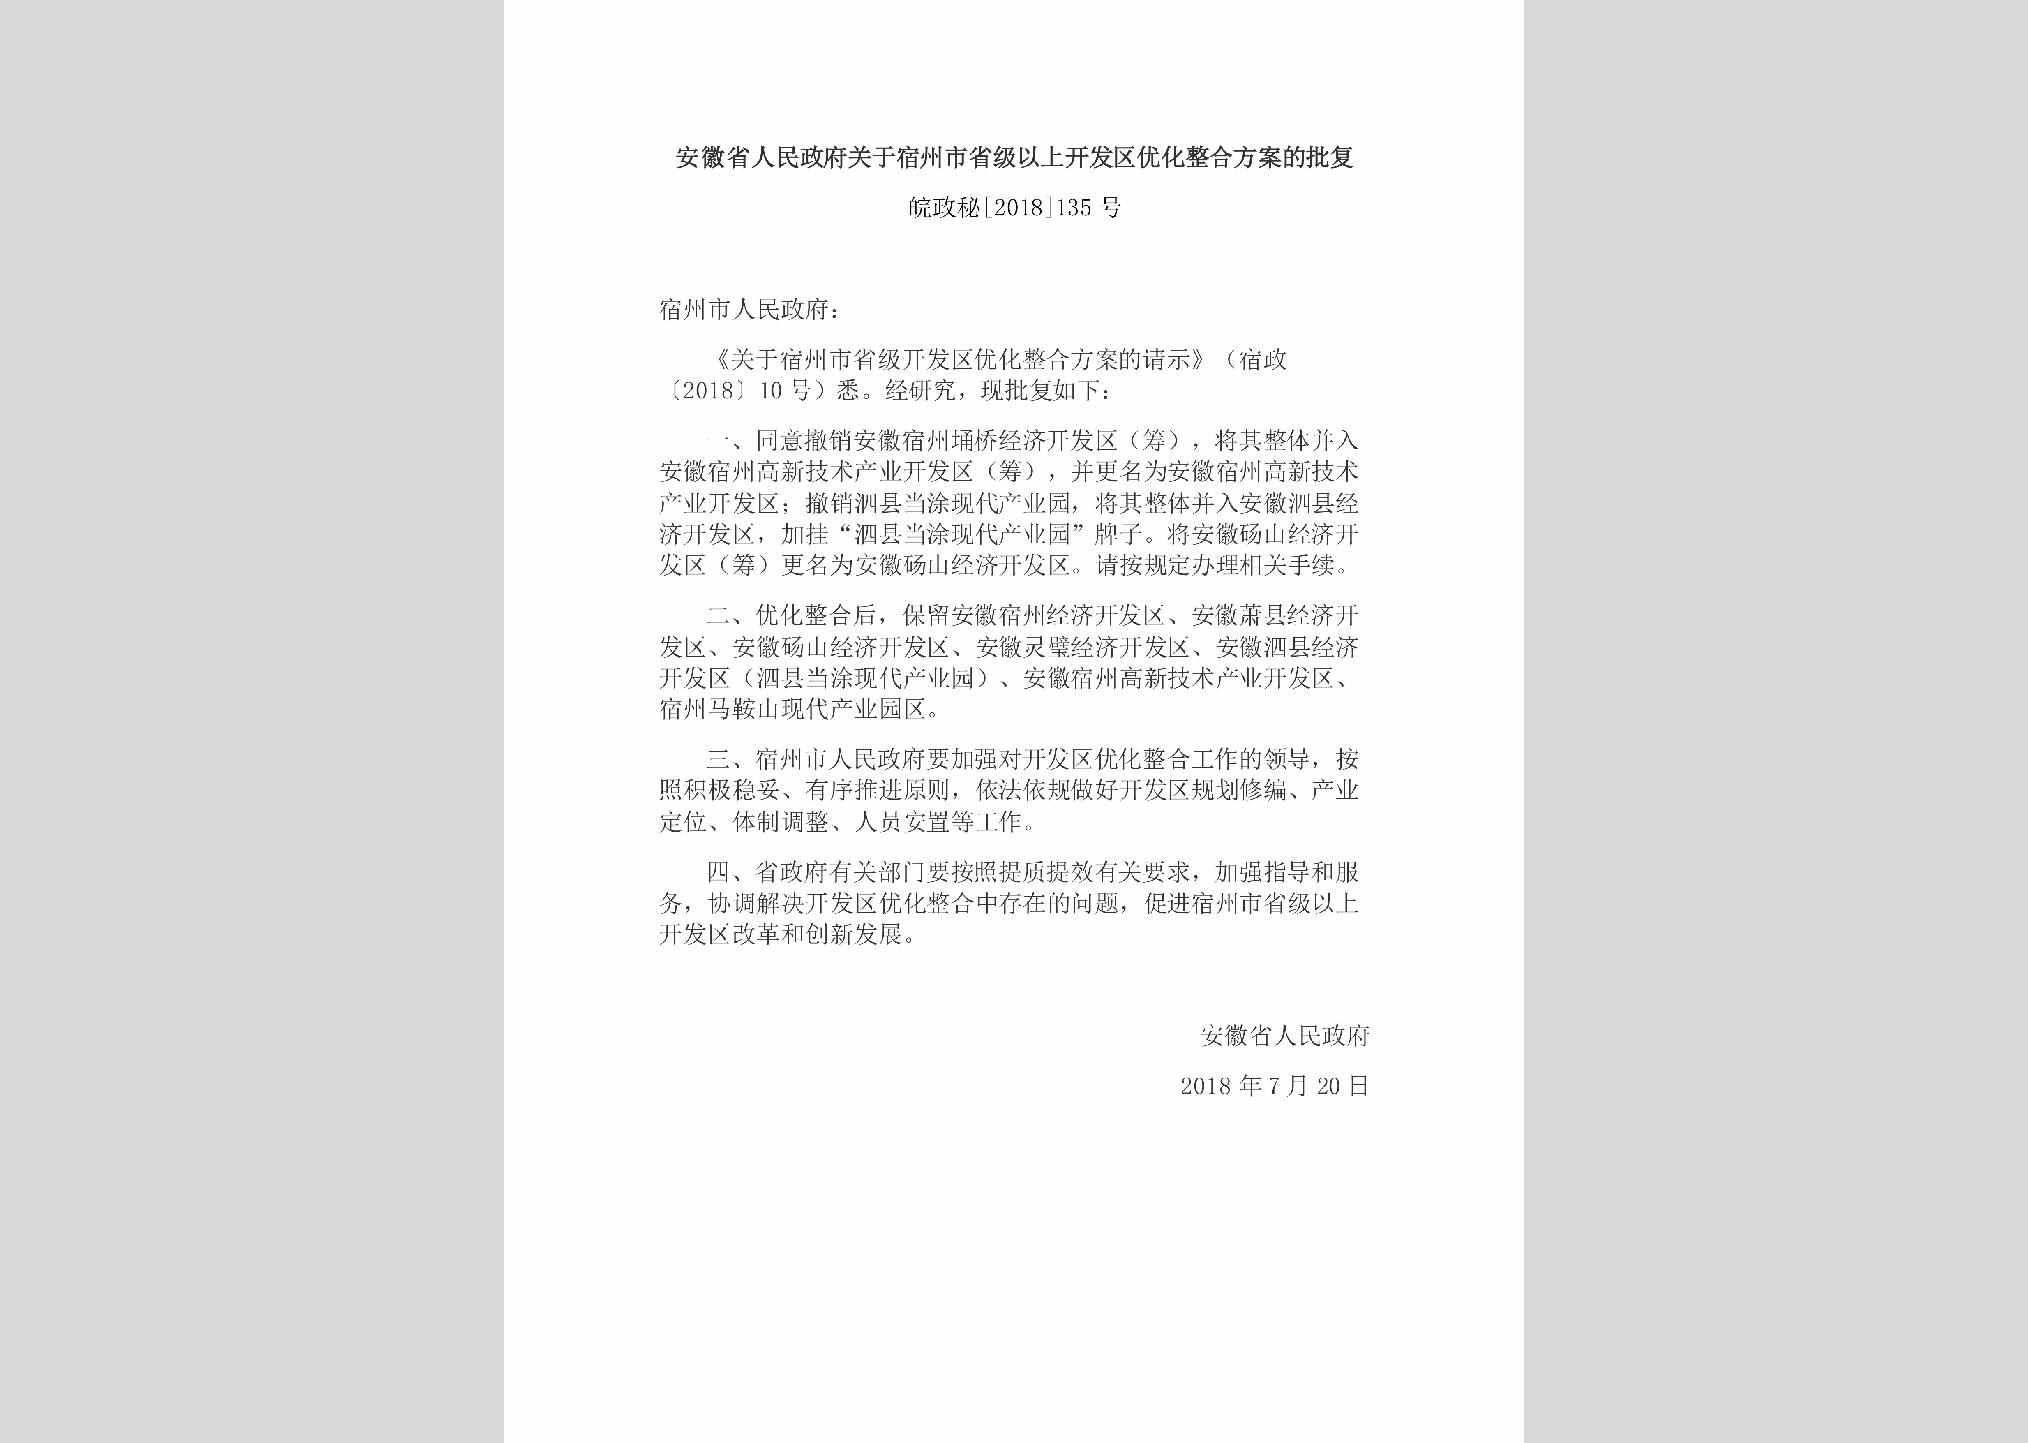 皖政秘[2018]135号：安徽省人民政府关于宿州市省级以上开发区优化整合方案的批复